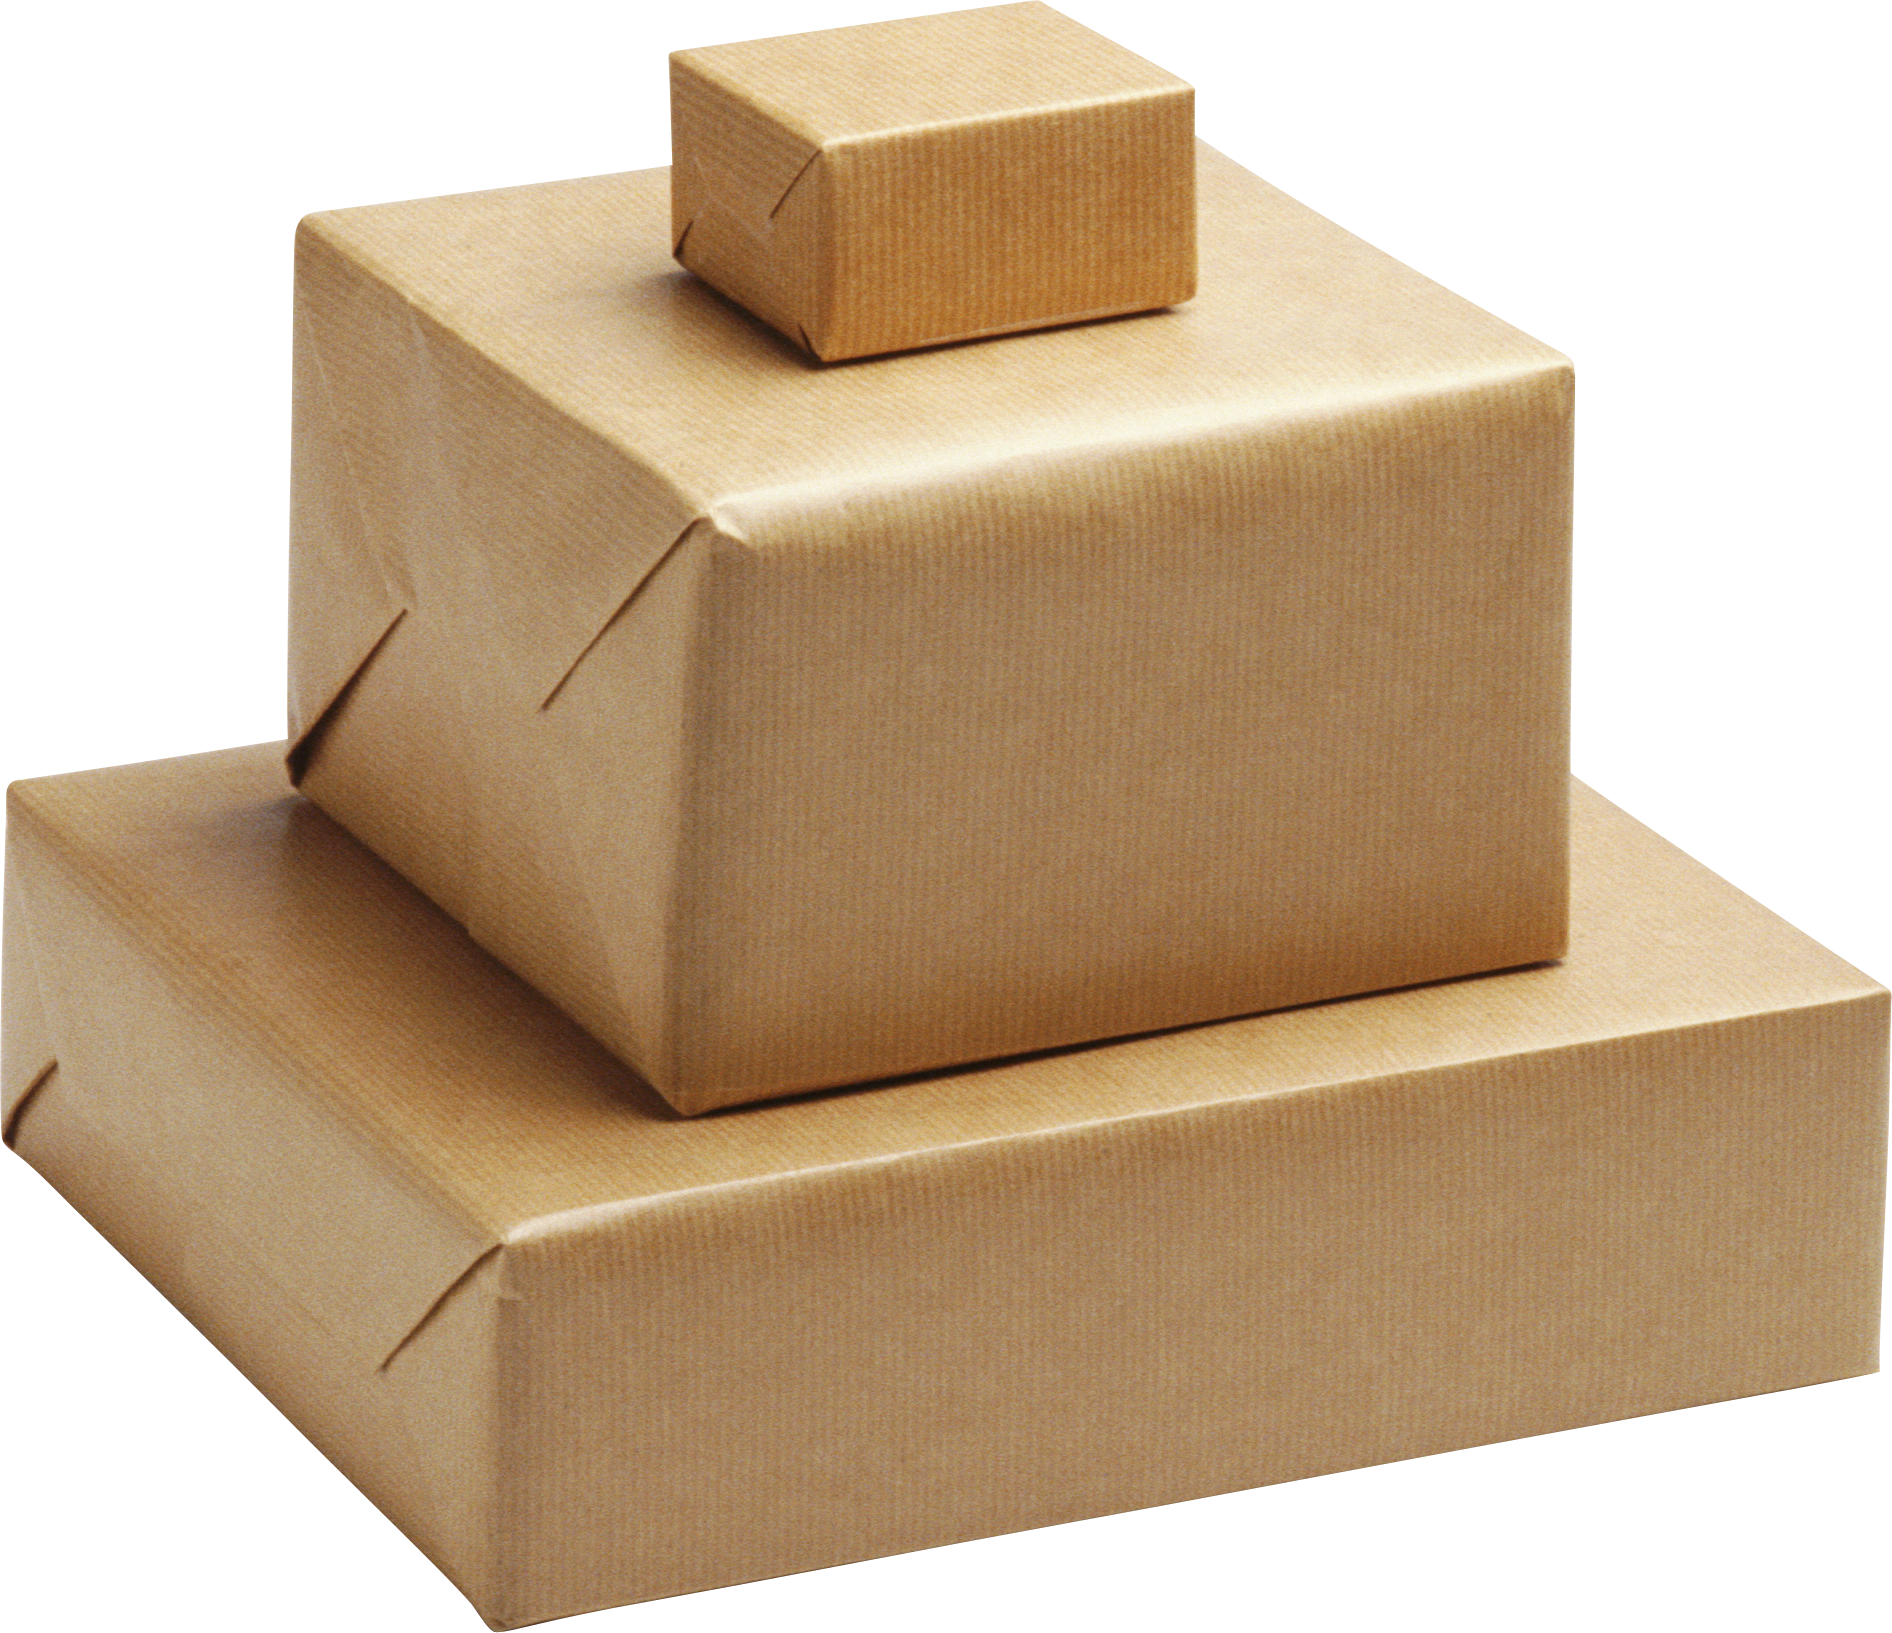 Karton, pudełko papierowe